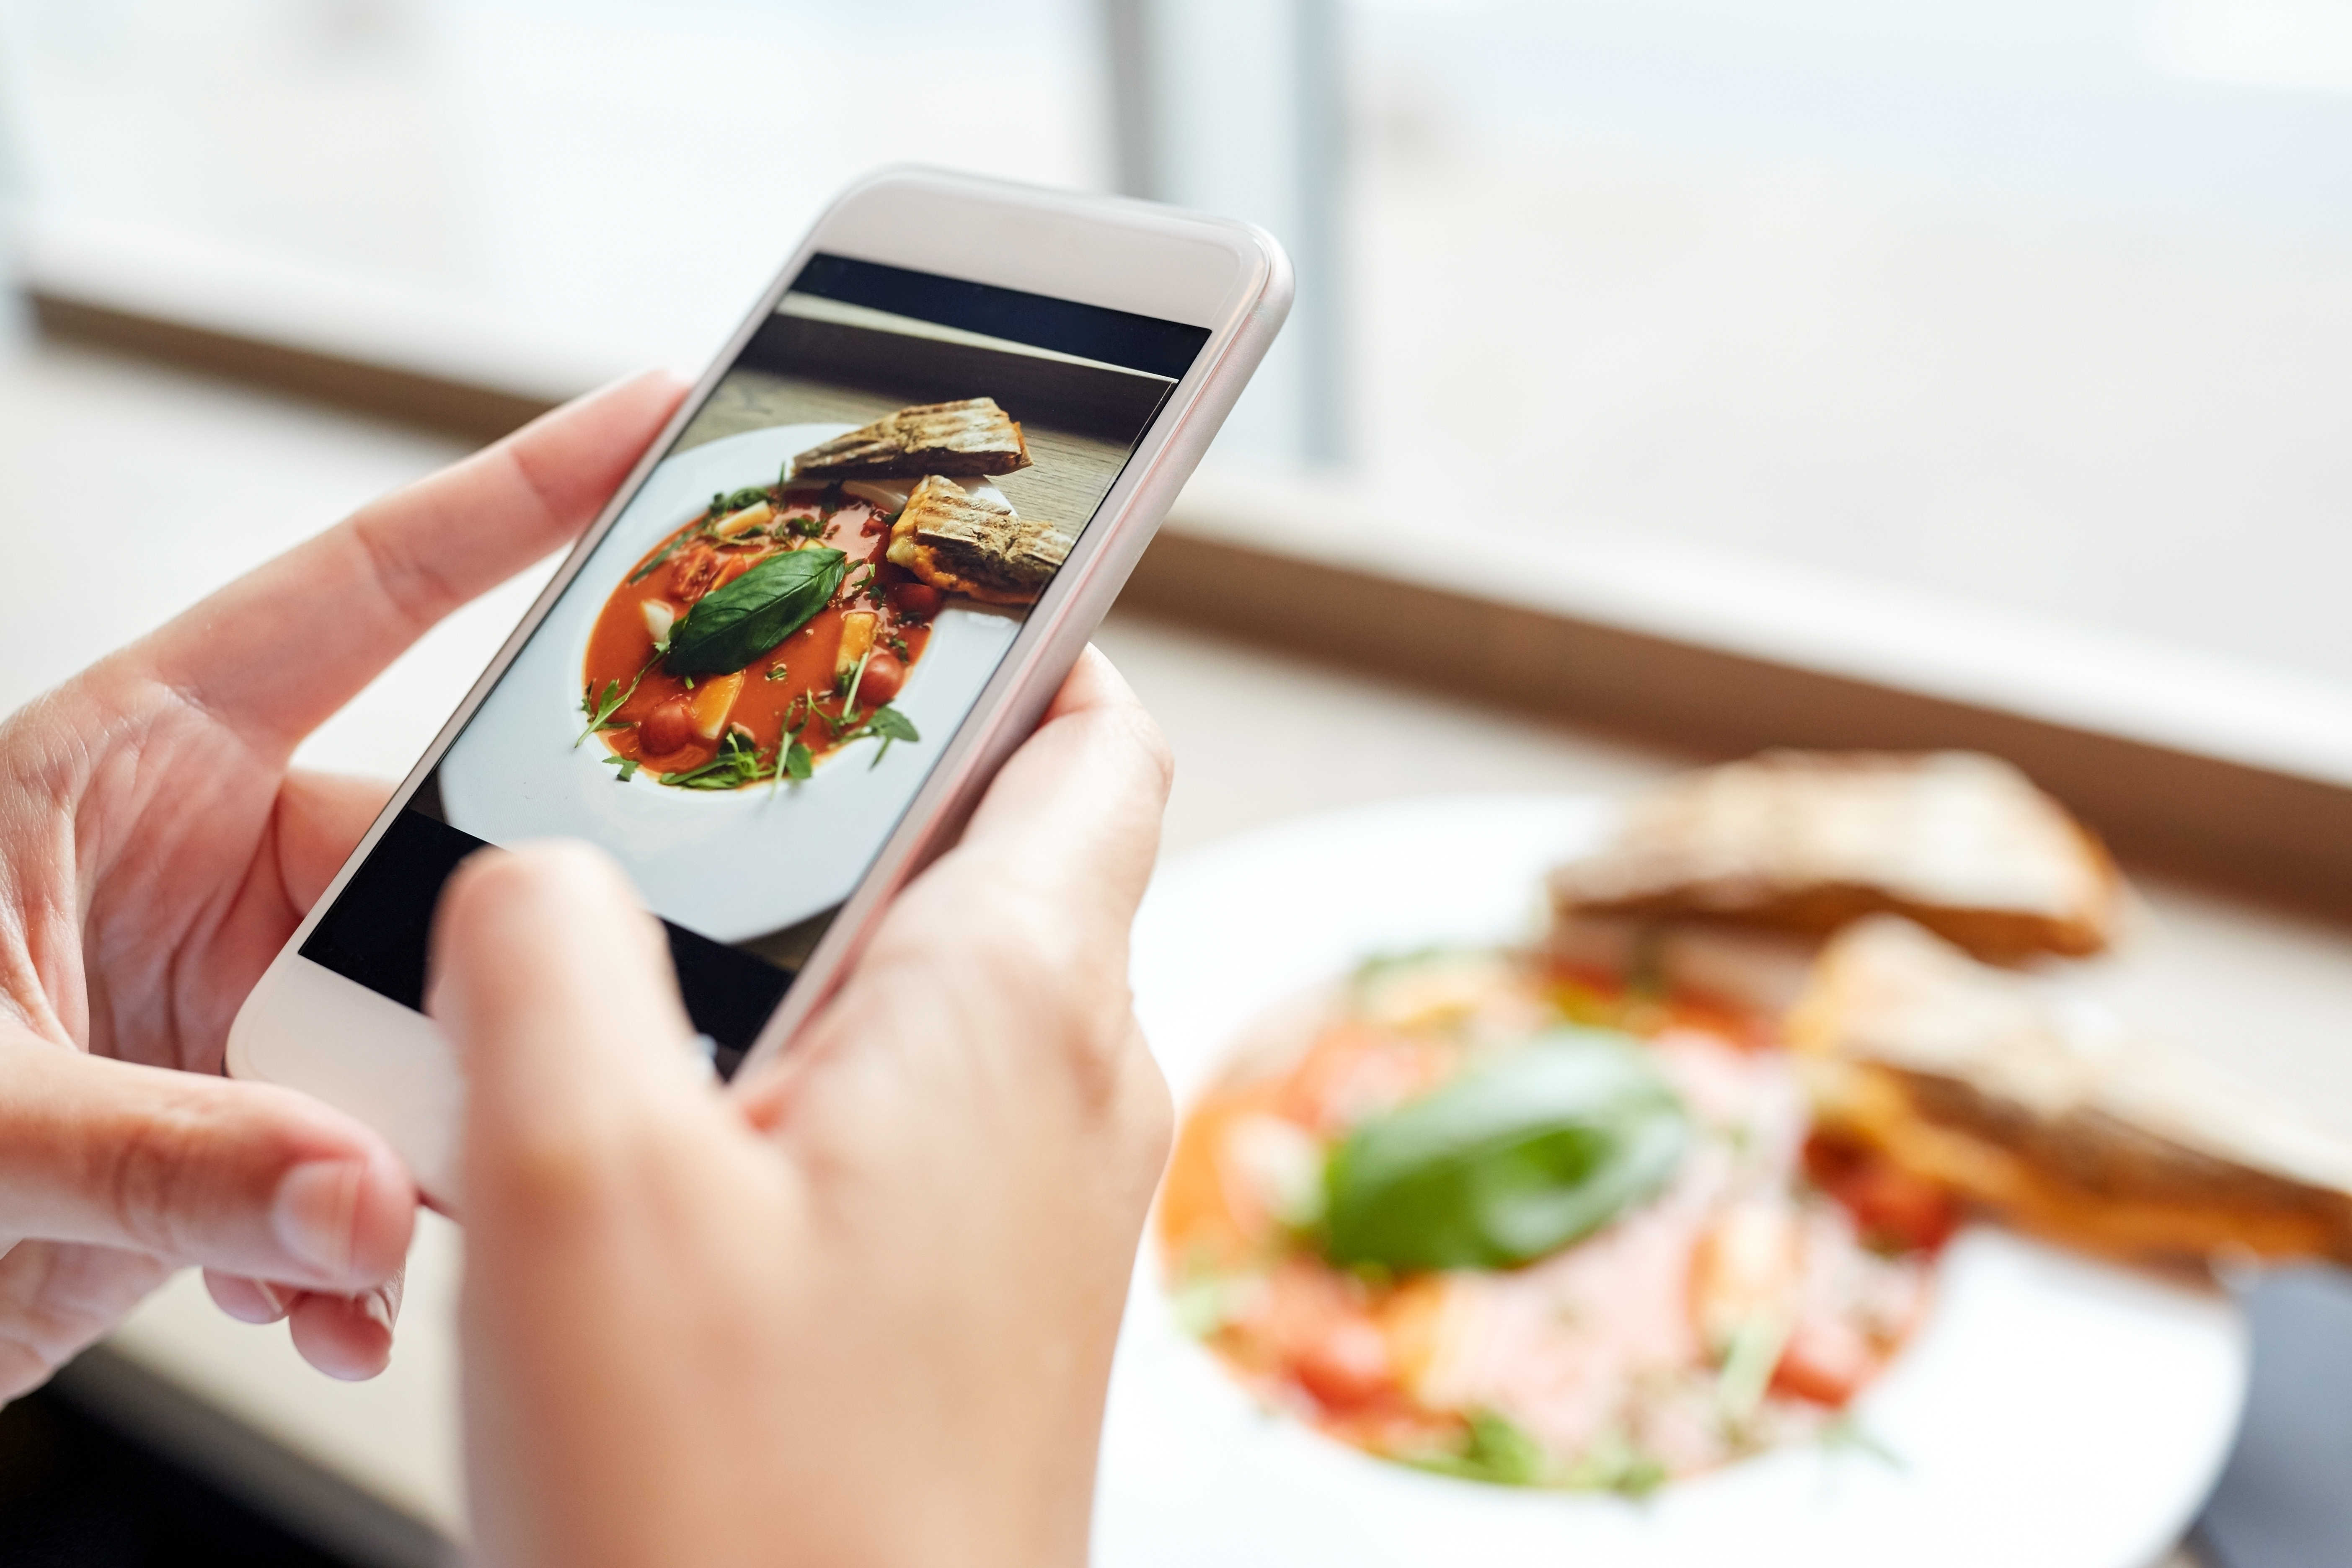 Improving Franchise Restaurant Image: The Power of Photo Audits